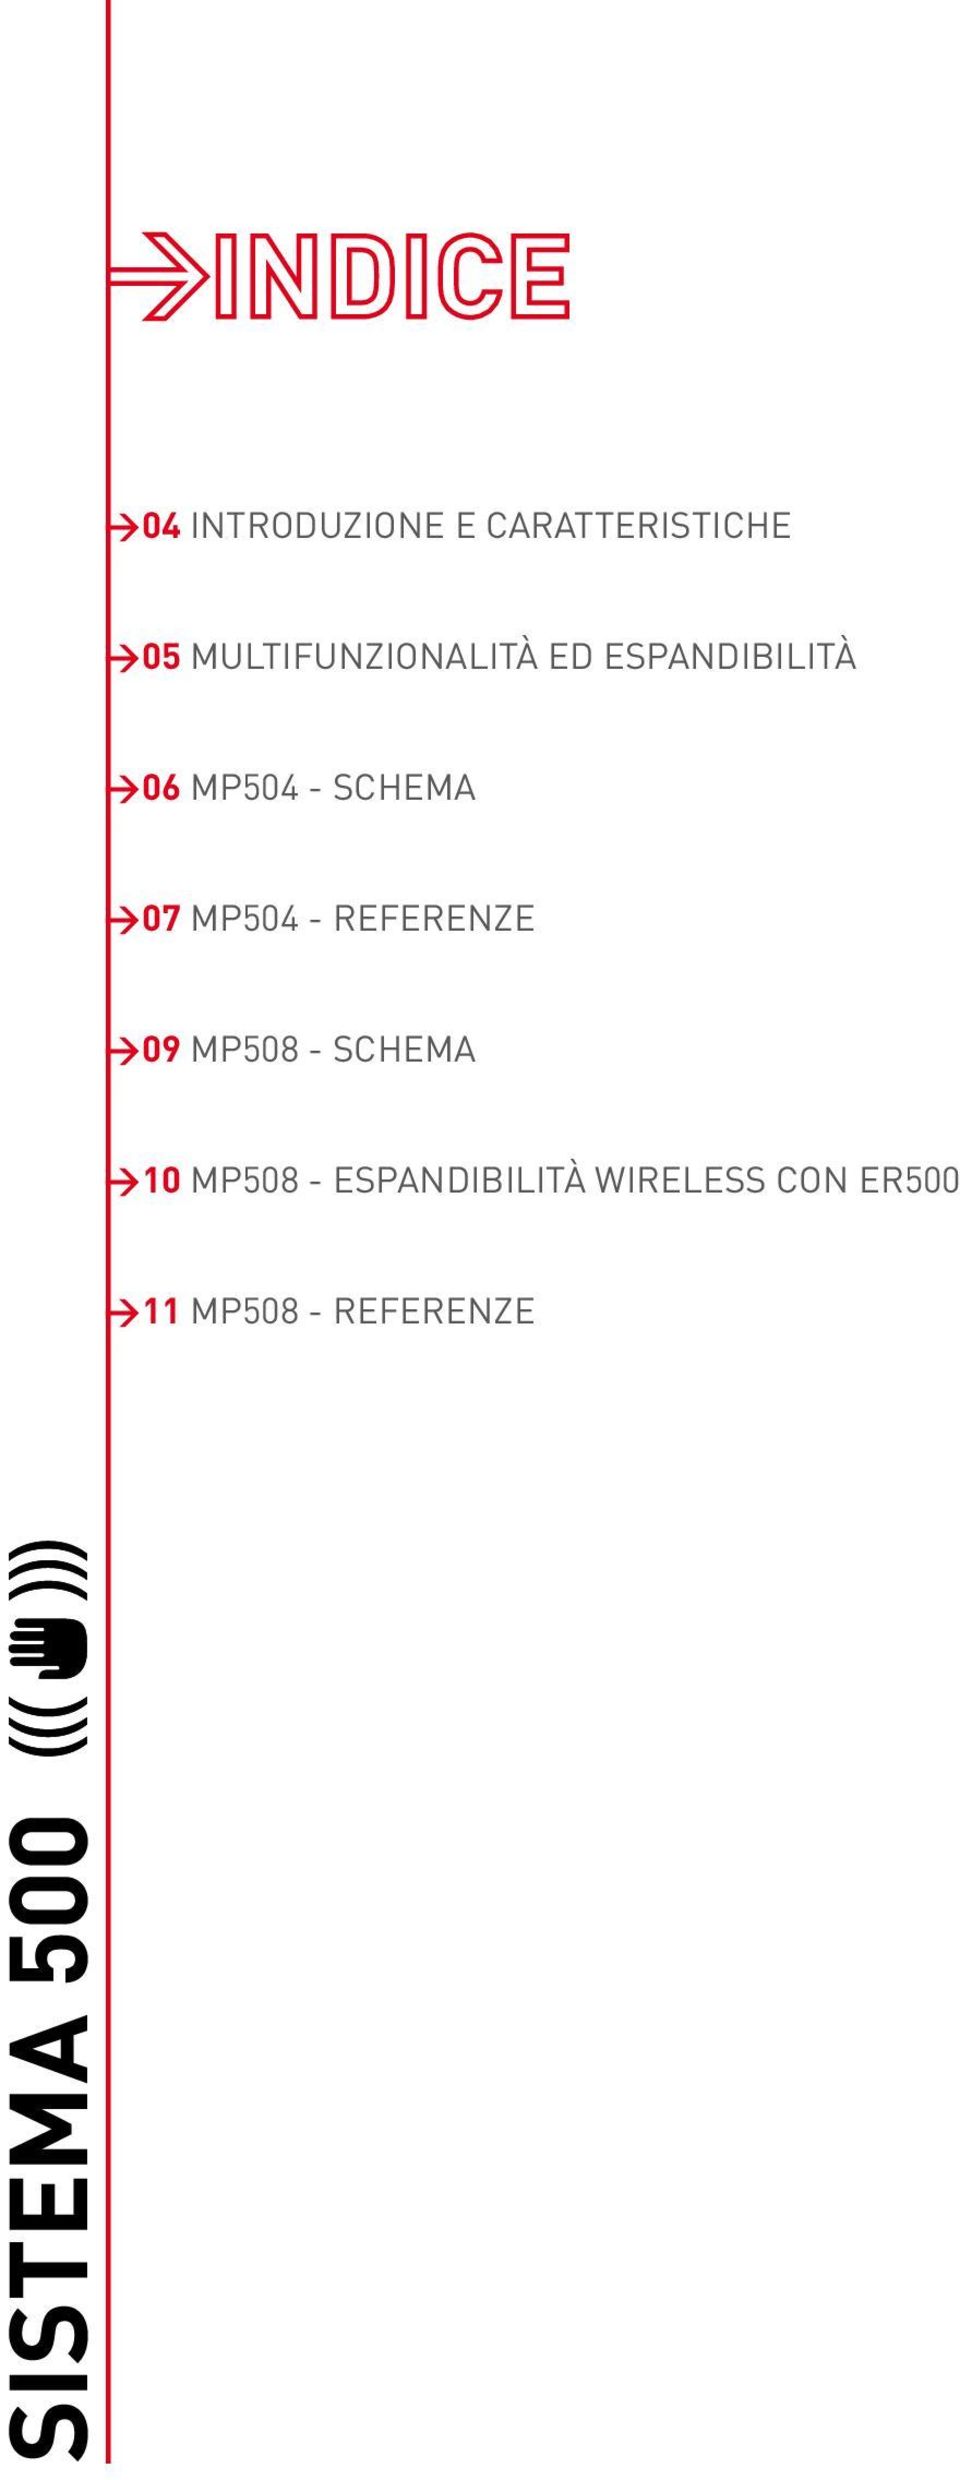 SCHEMA >07 MP504 - REFERENZE >09 MP508 - SCHEMA >10